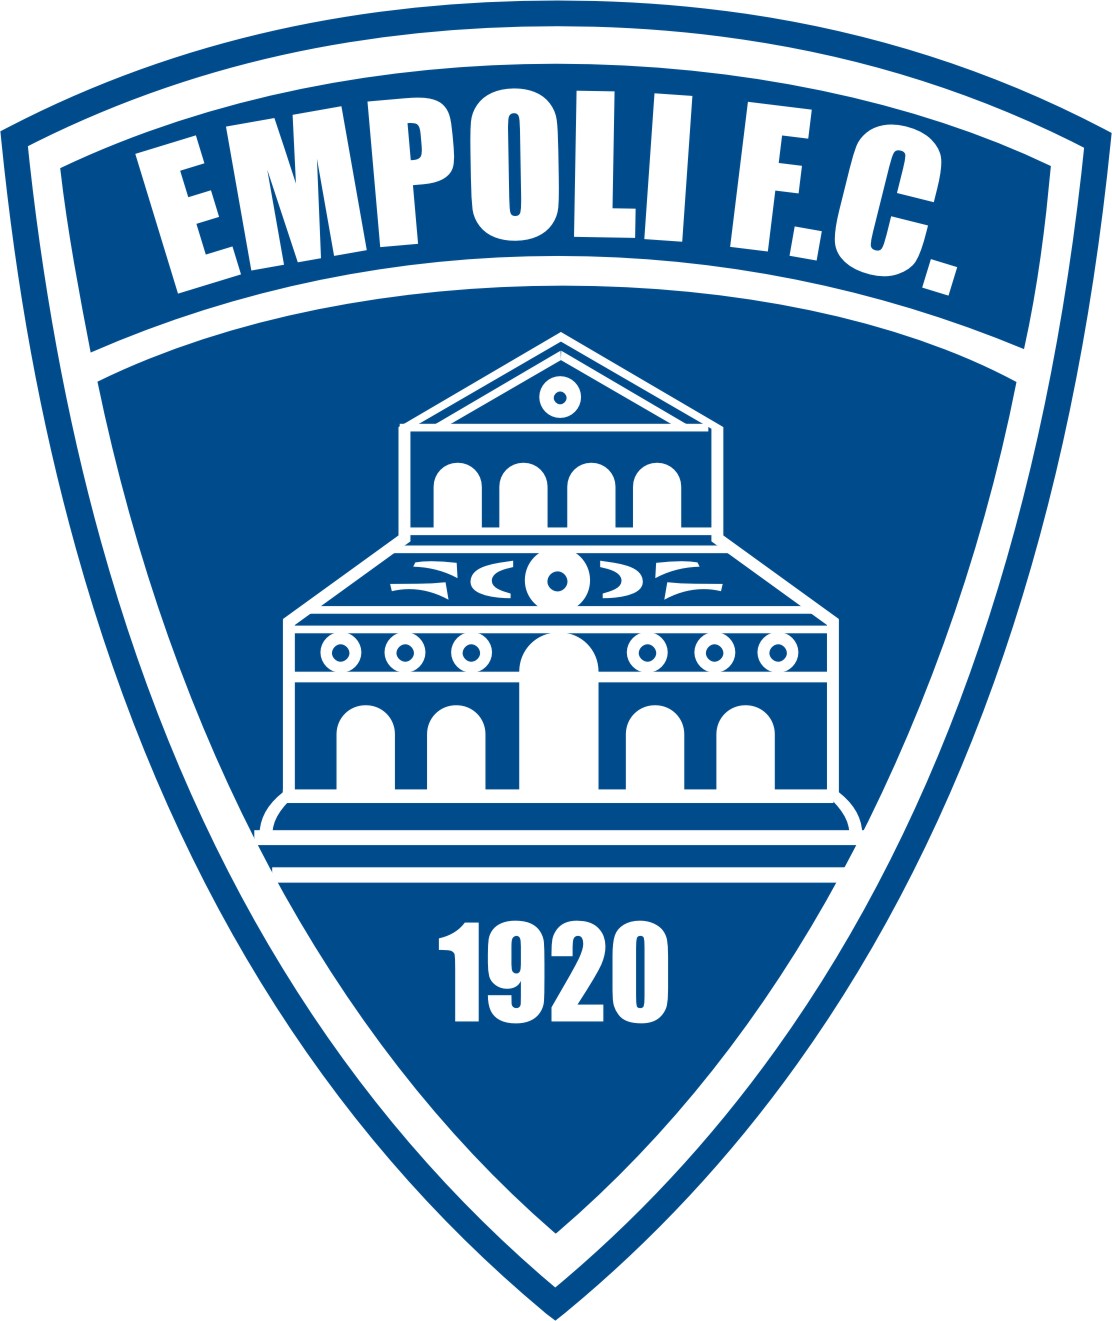 empoli_emblem.png